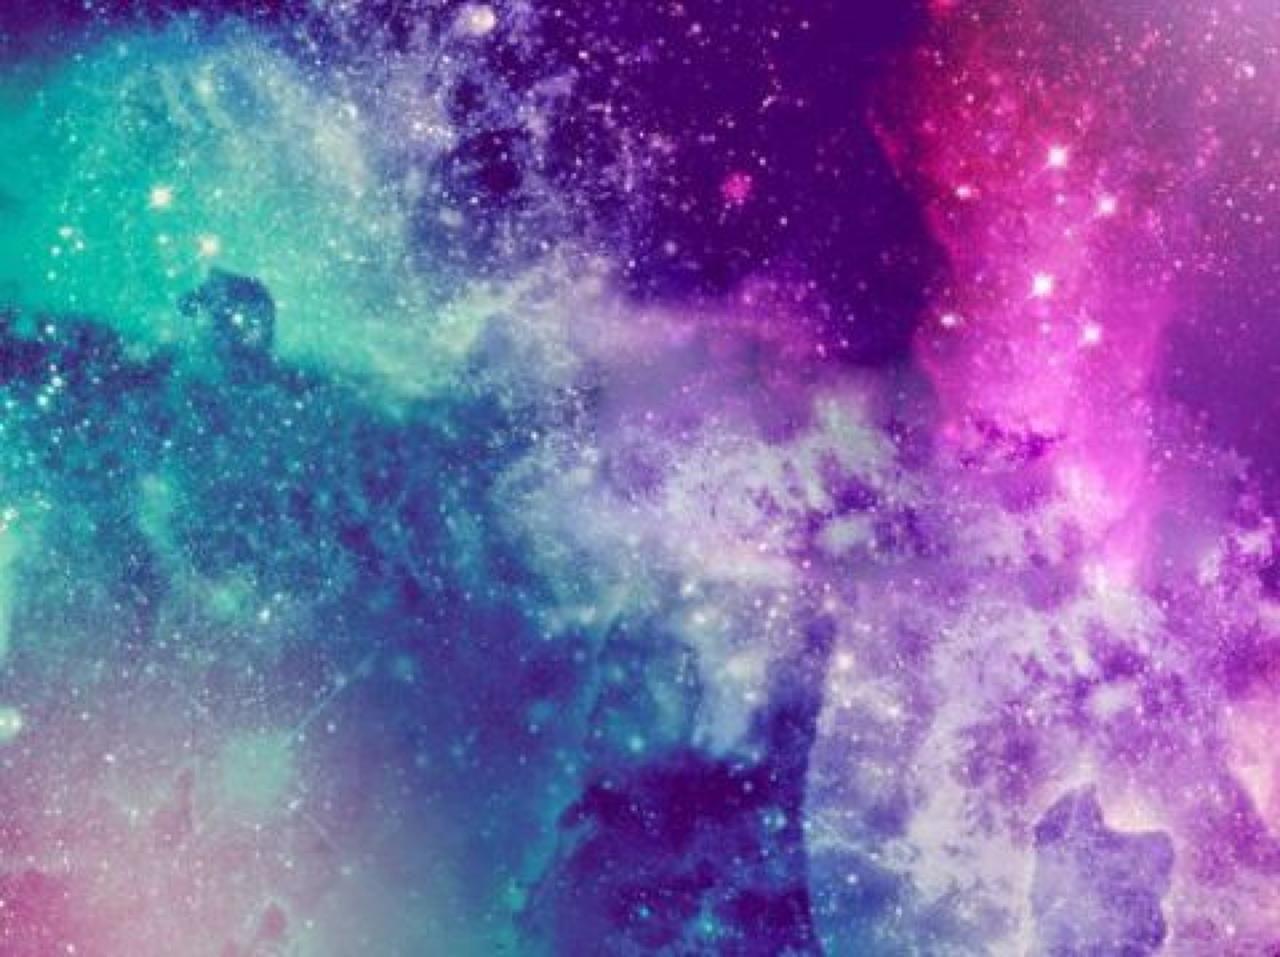 Với hình ảnh Pastel Pink Galaxy, bạn sẽ không thể rời mắt khỏi màn hình. Tông màu hồng nhẹ nhàng kết hợp với những ngôi sao phát sáng tạo nên một bầu trời khác lạ và quyến rũ.